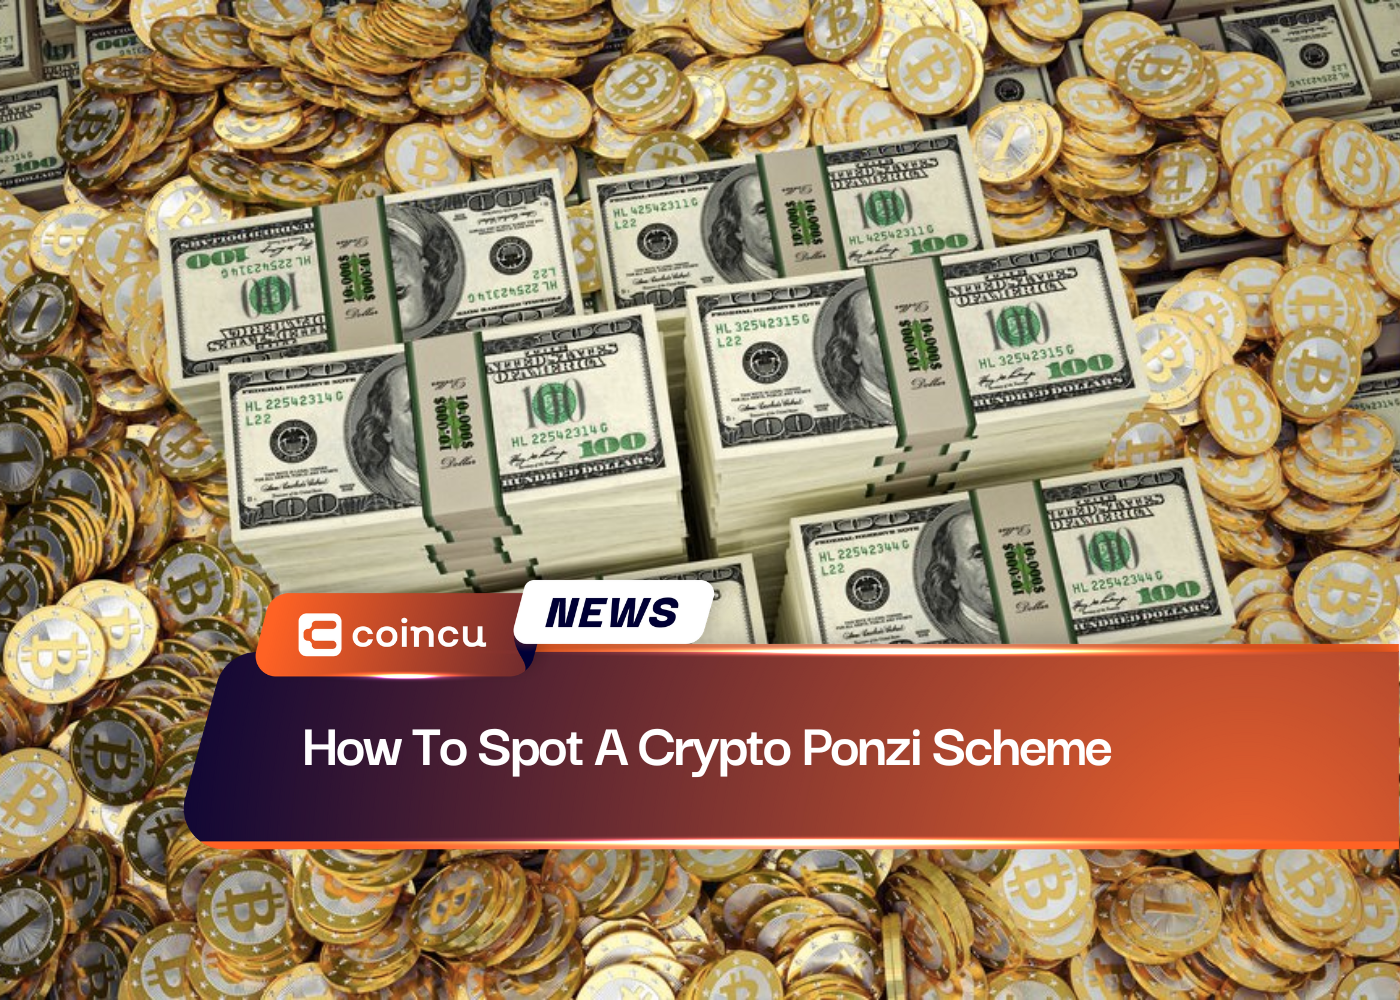 How To Spot A Crypto Ponzi Scheme